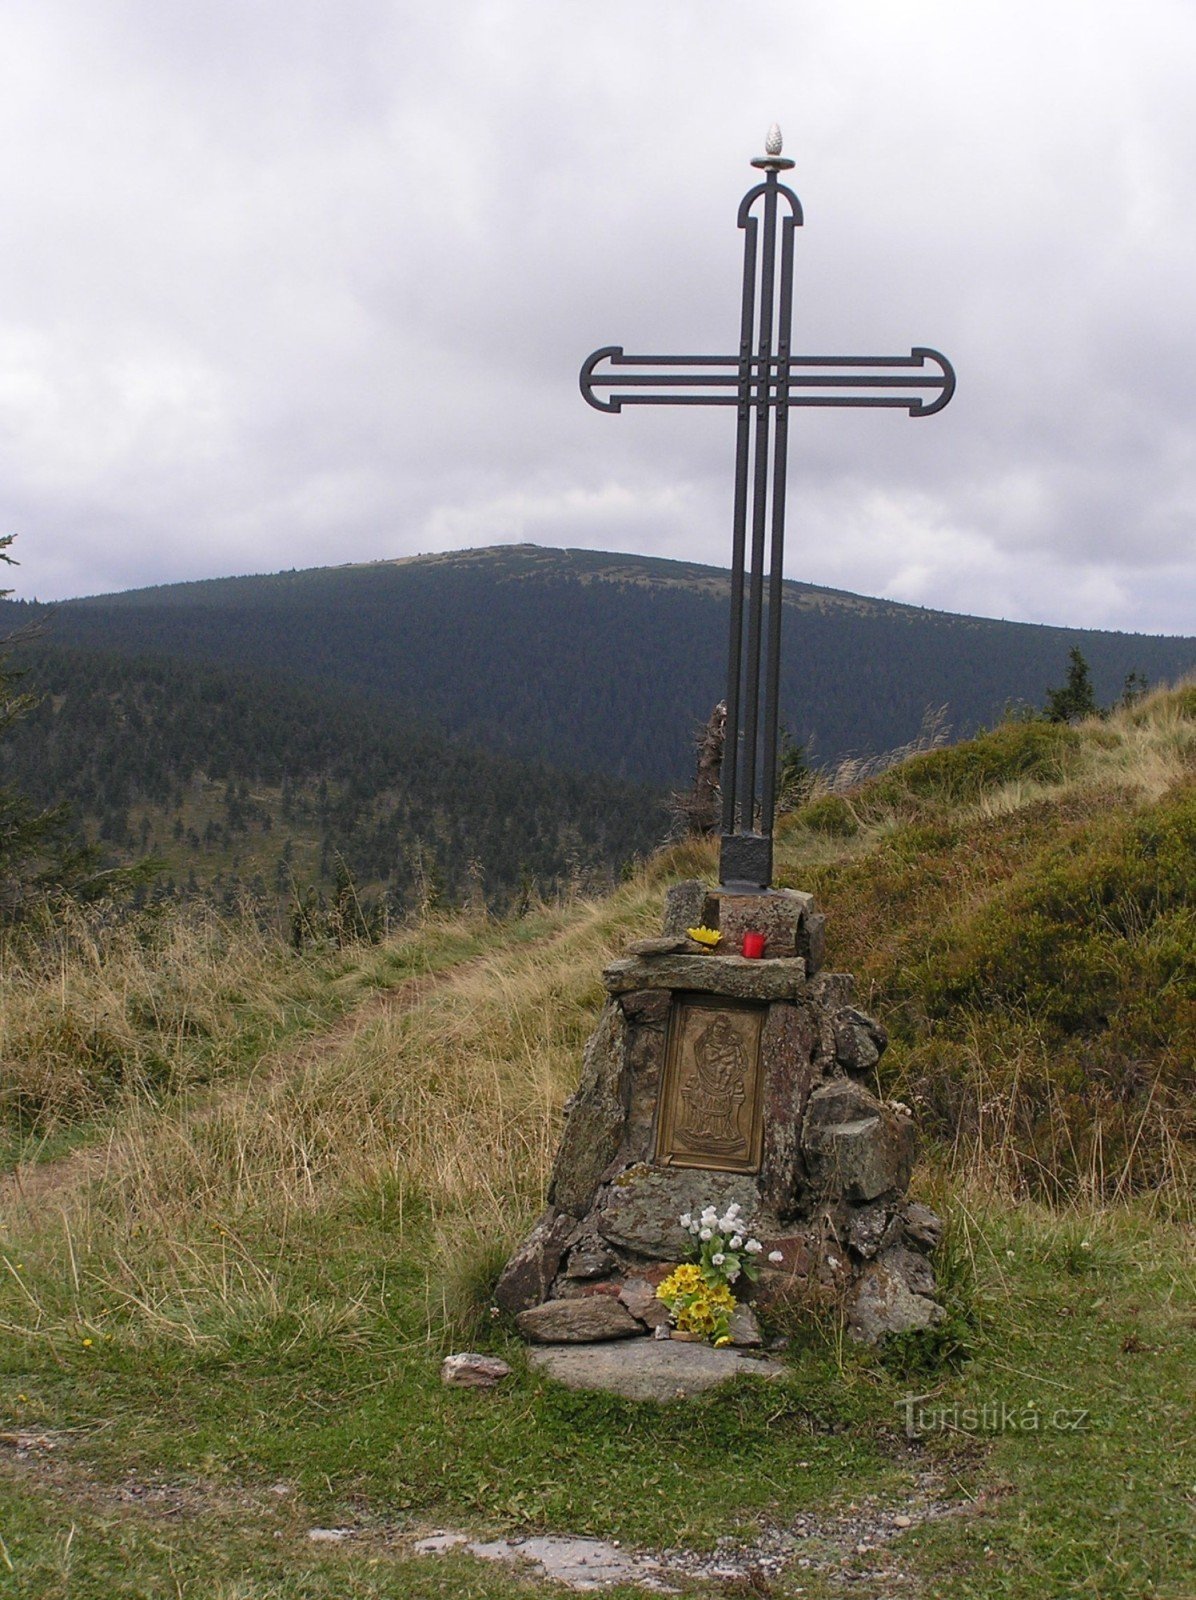 Vřesová 的十字架与 Keprník 的背景很好